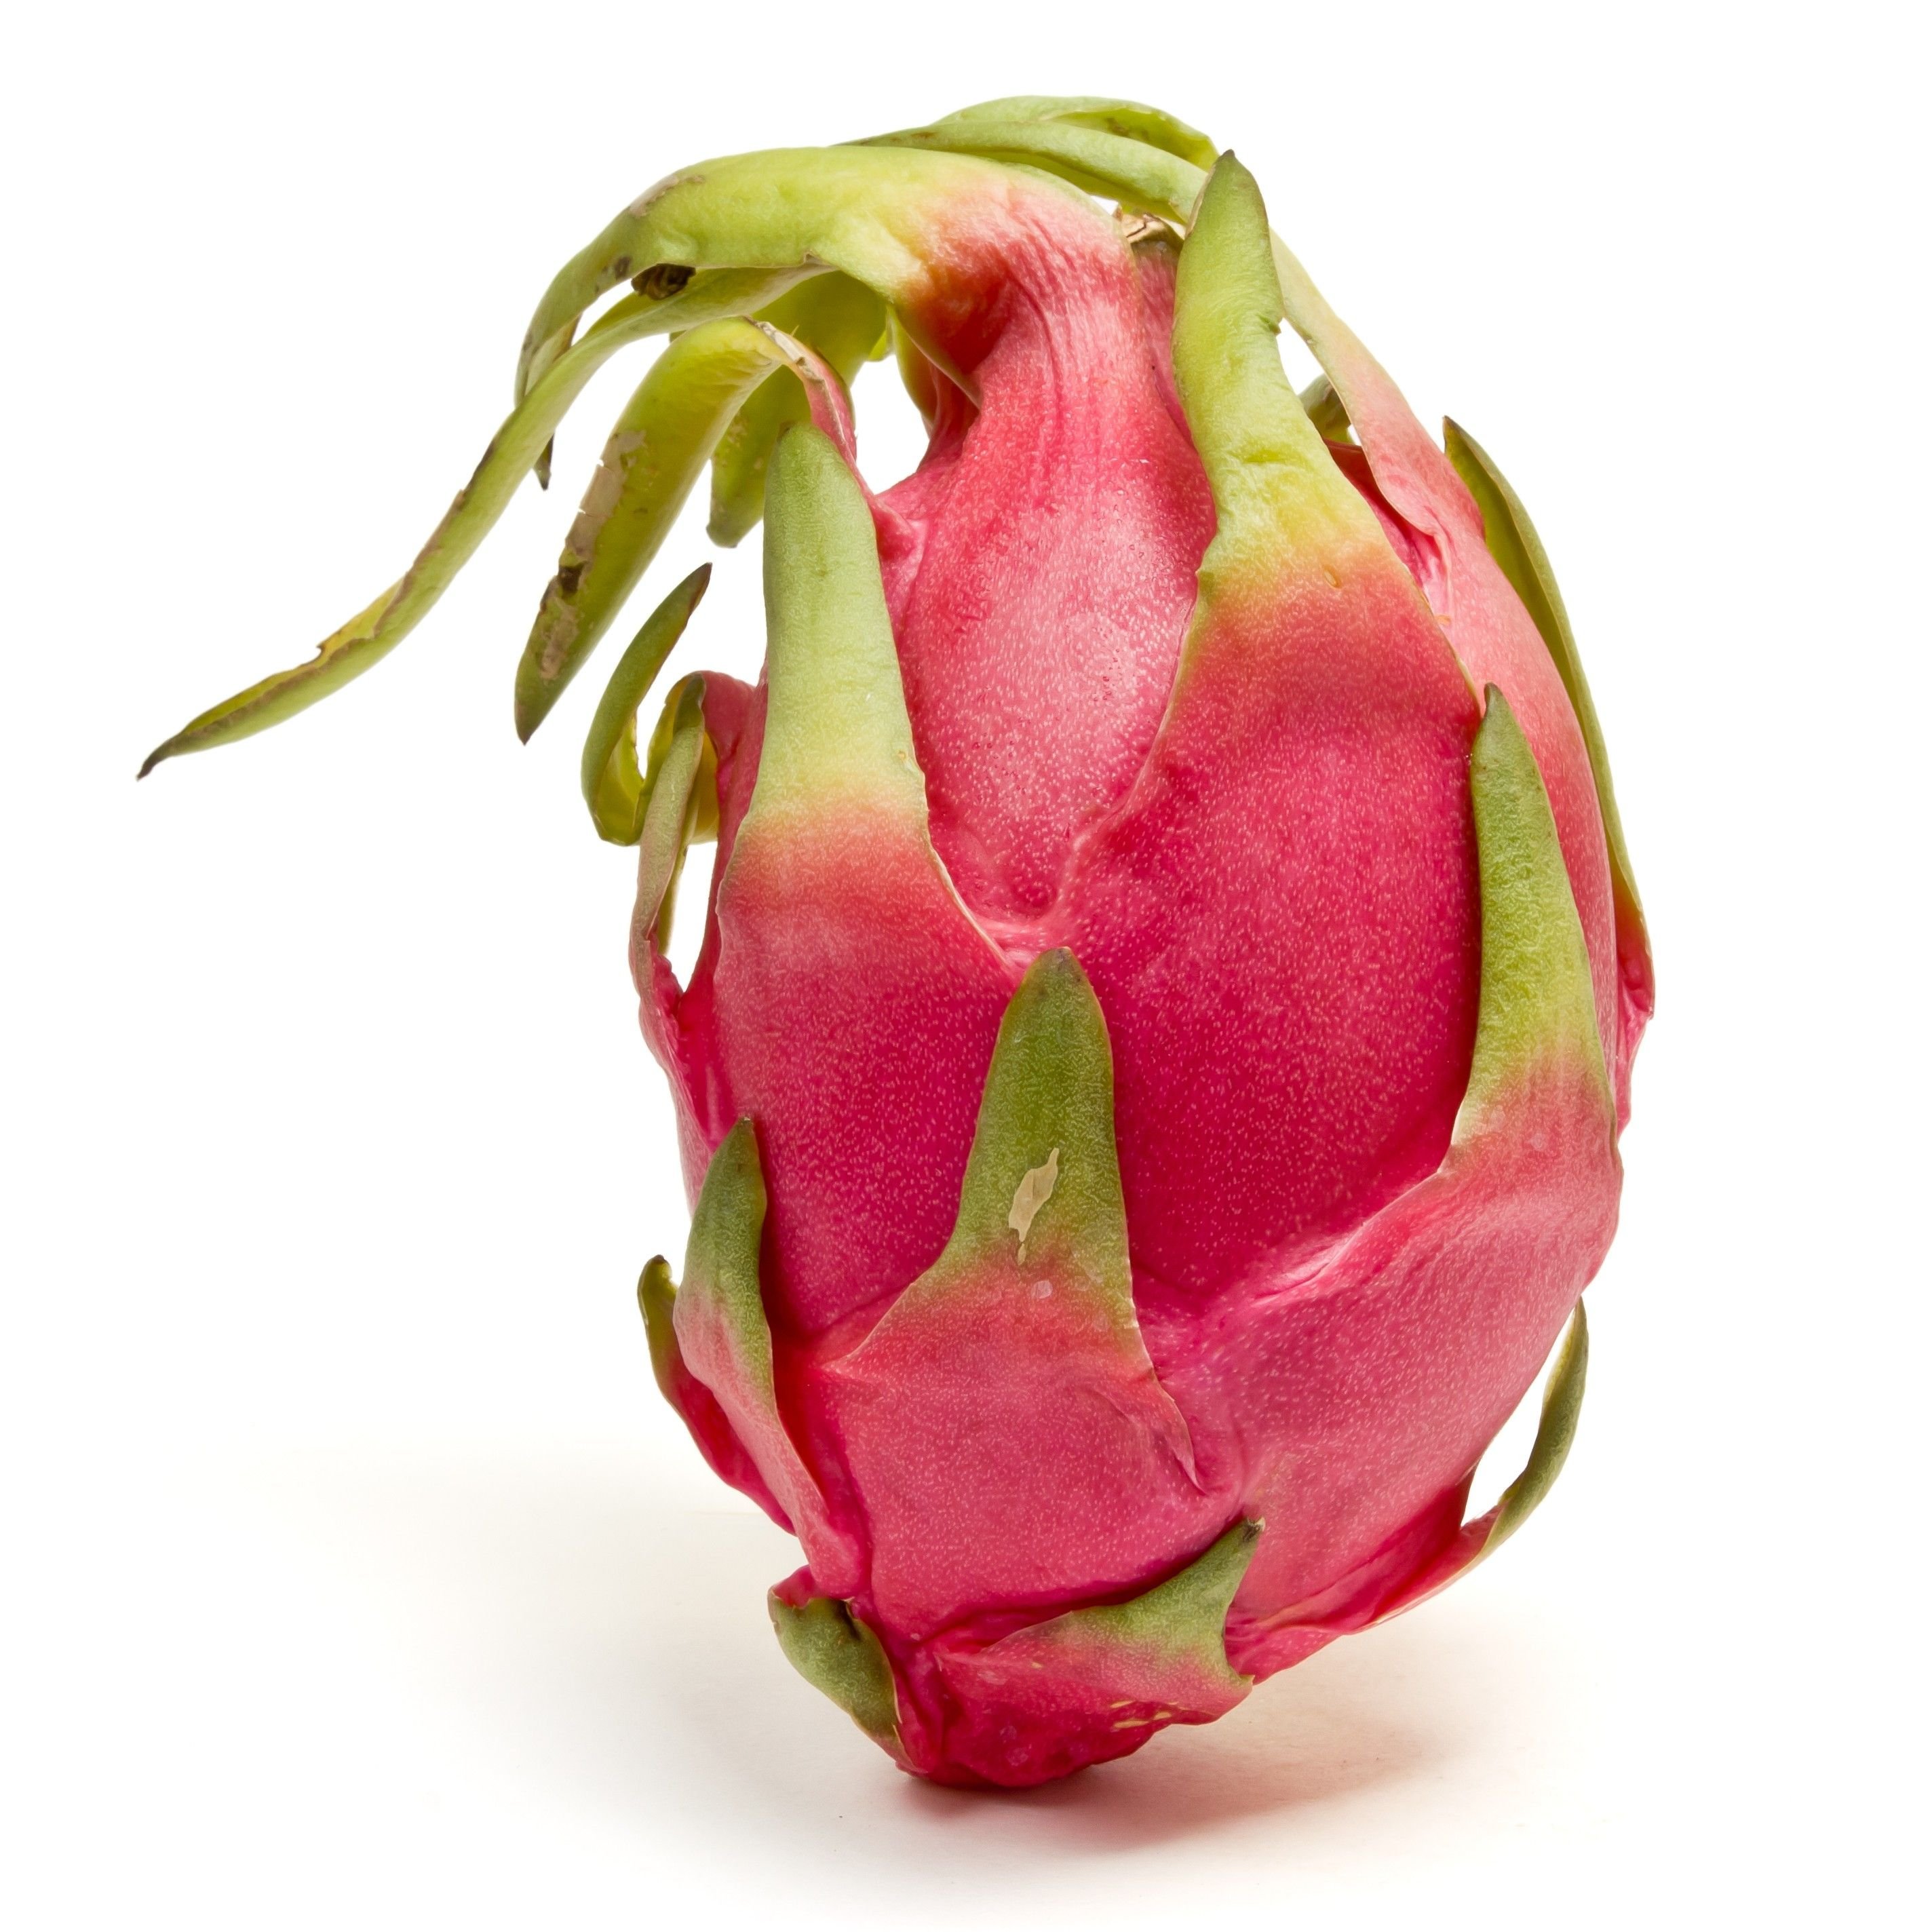 واضح ترین تصویر میوه گرمسیری پیتایا یا Pitaya با زمینه سفید رنگ